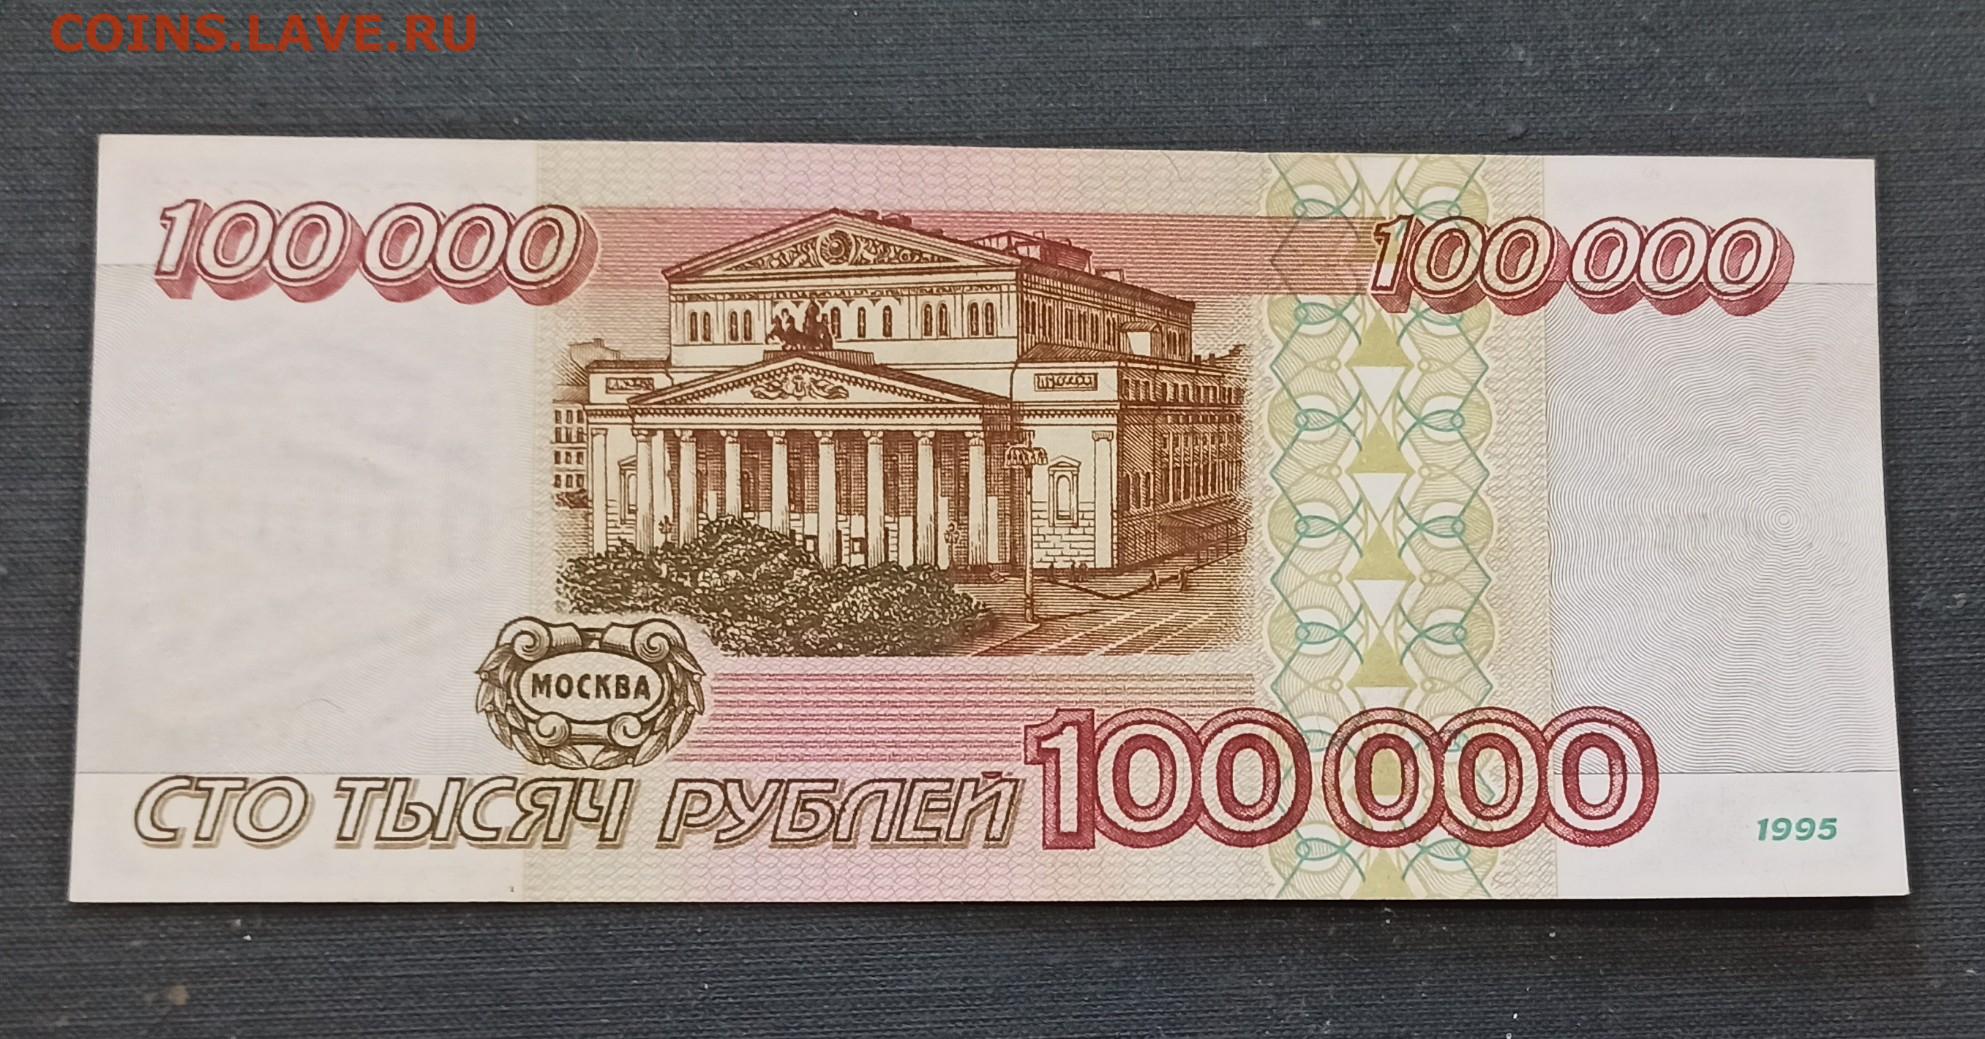 Цена 1000000 рублей